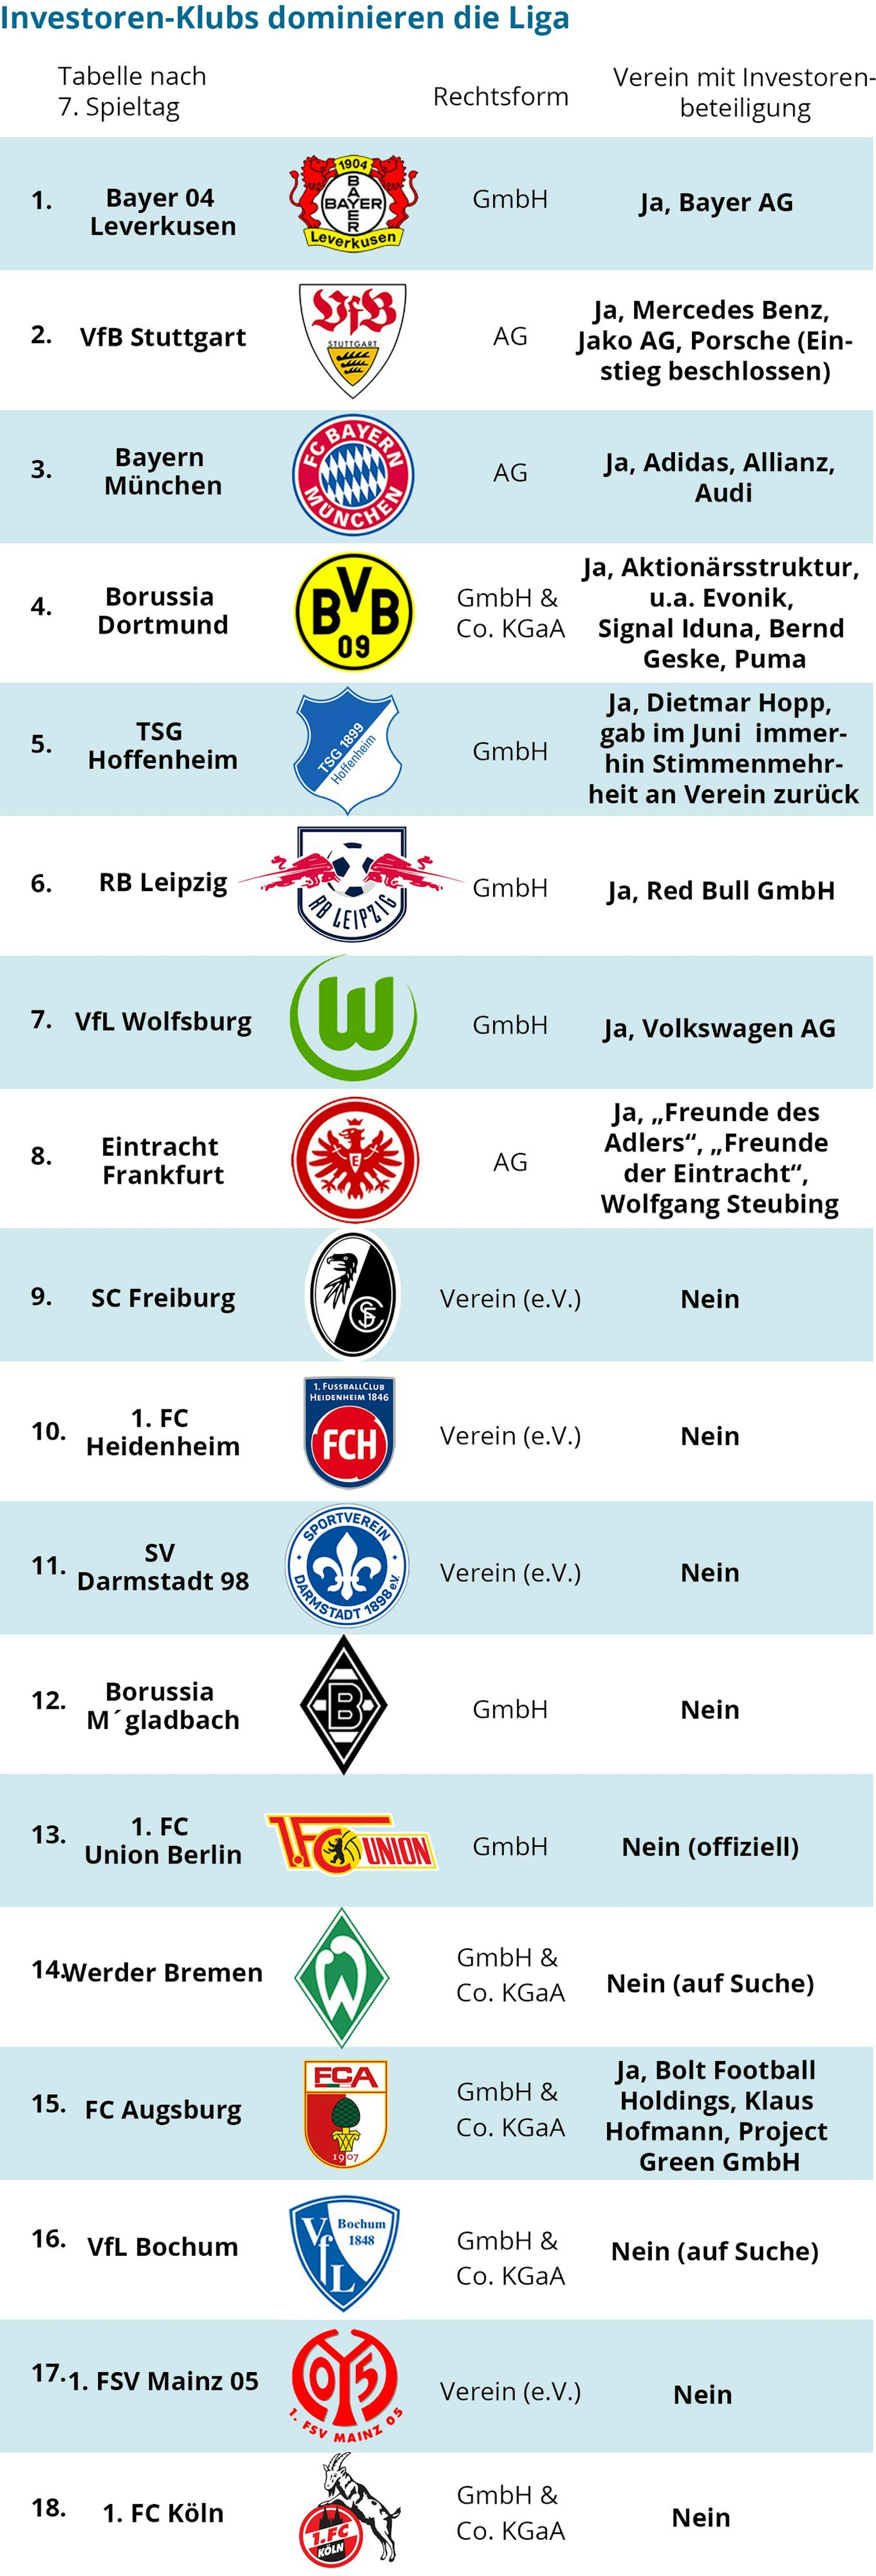 Die Bundesliga-Tabelle nach dem 7. Spieltag: Die ersten acht Plätze belegen Vereine mit Investoren-Beteiligungen.